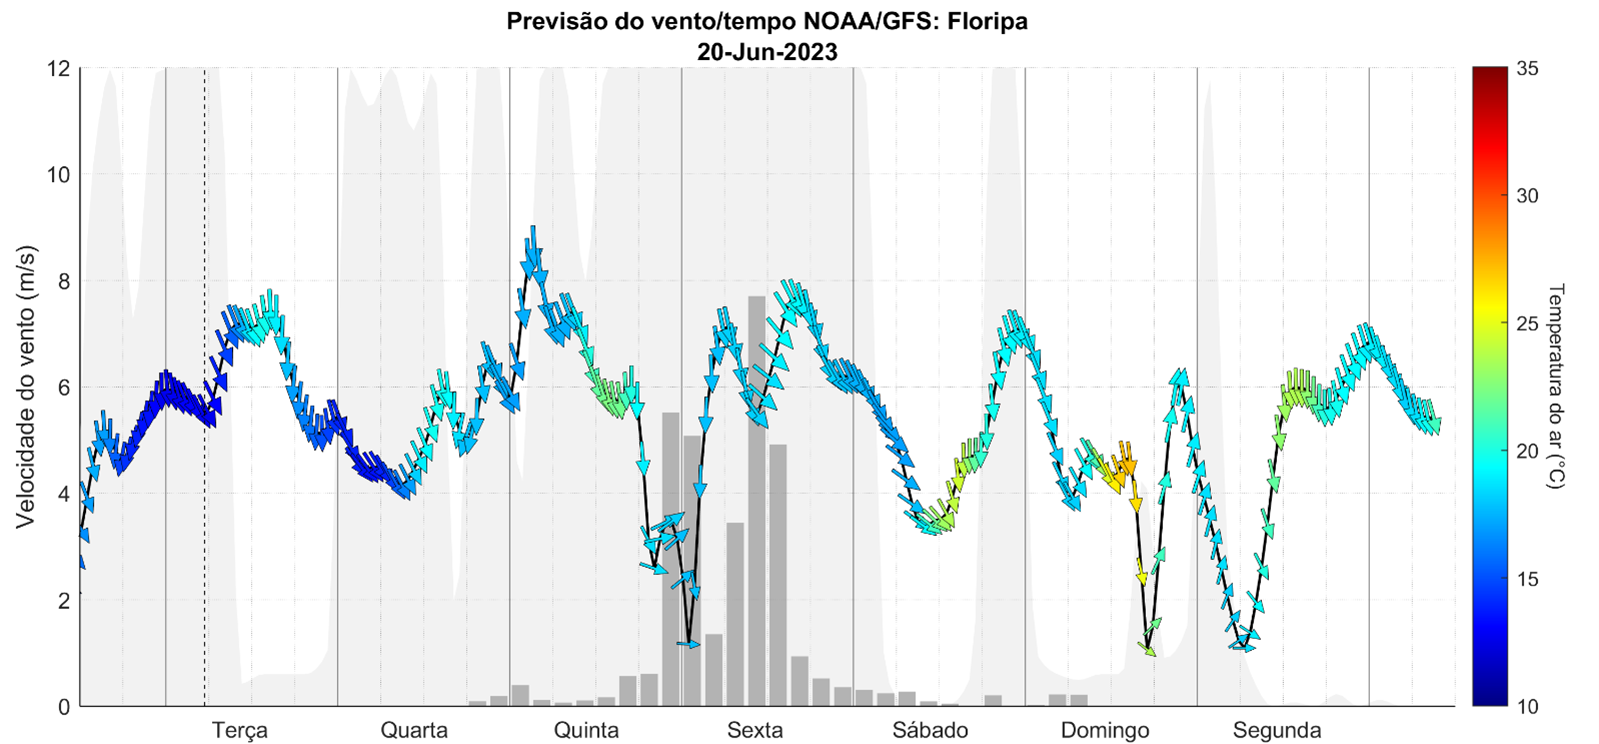 Previsão do vento a partir dos dados de satélite da NOAA na região de Florianópolis mostra excelente condições de vento para quinta-feira dia 22/06 e, mais importante, para segunda-feira, quando deve começar o campeonato de Saquarema.